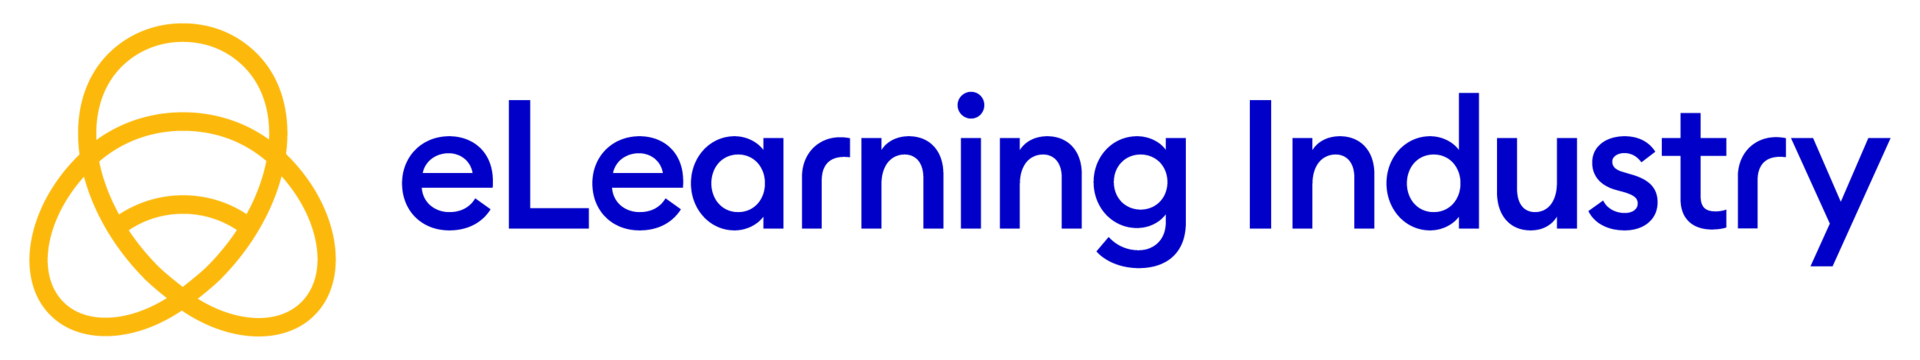 eLearning_Industry_Logo